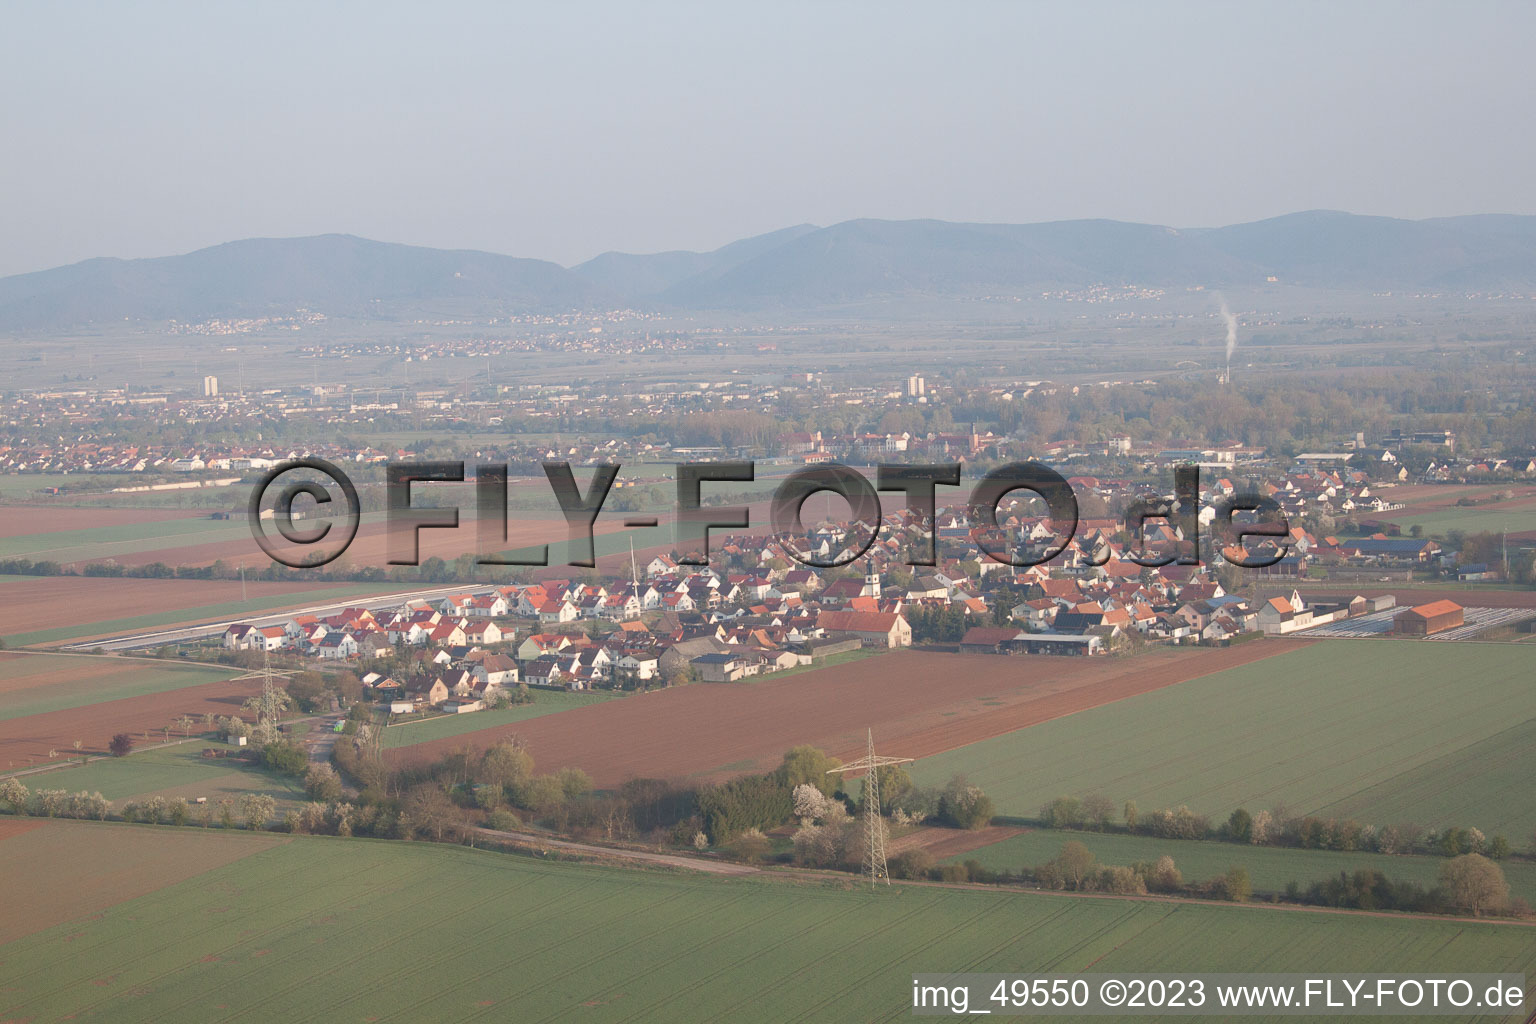 Ortsteil Mörlheim in Landau in der Pfalz im Bundesland Rheinland-Pfalz, Deutschland von einer Drohne aus